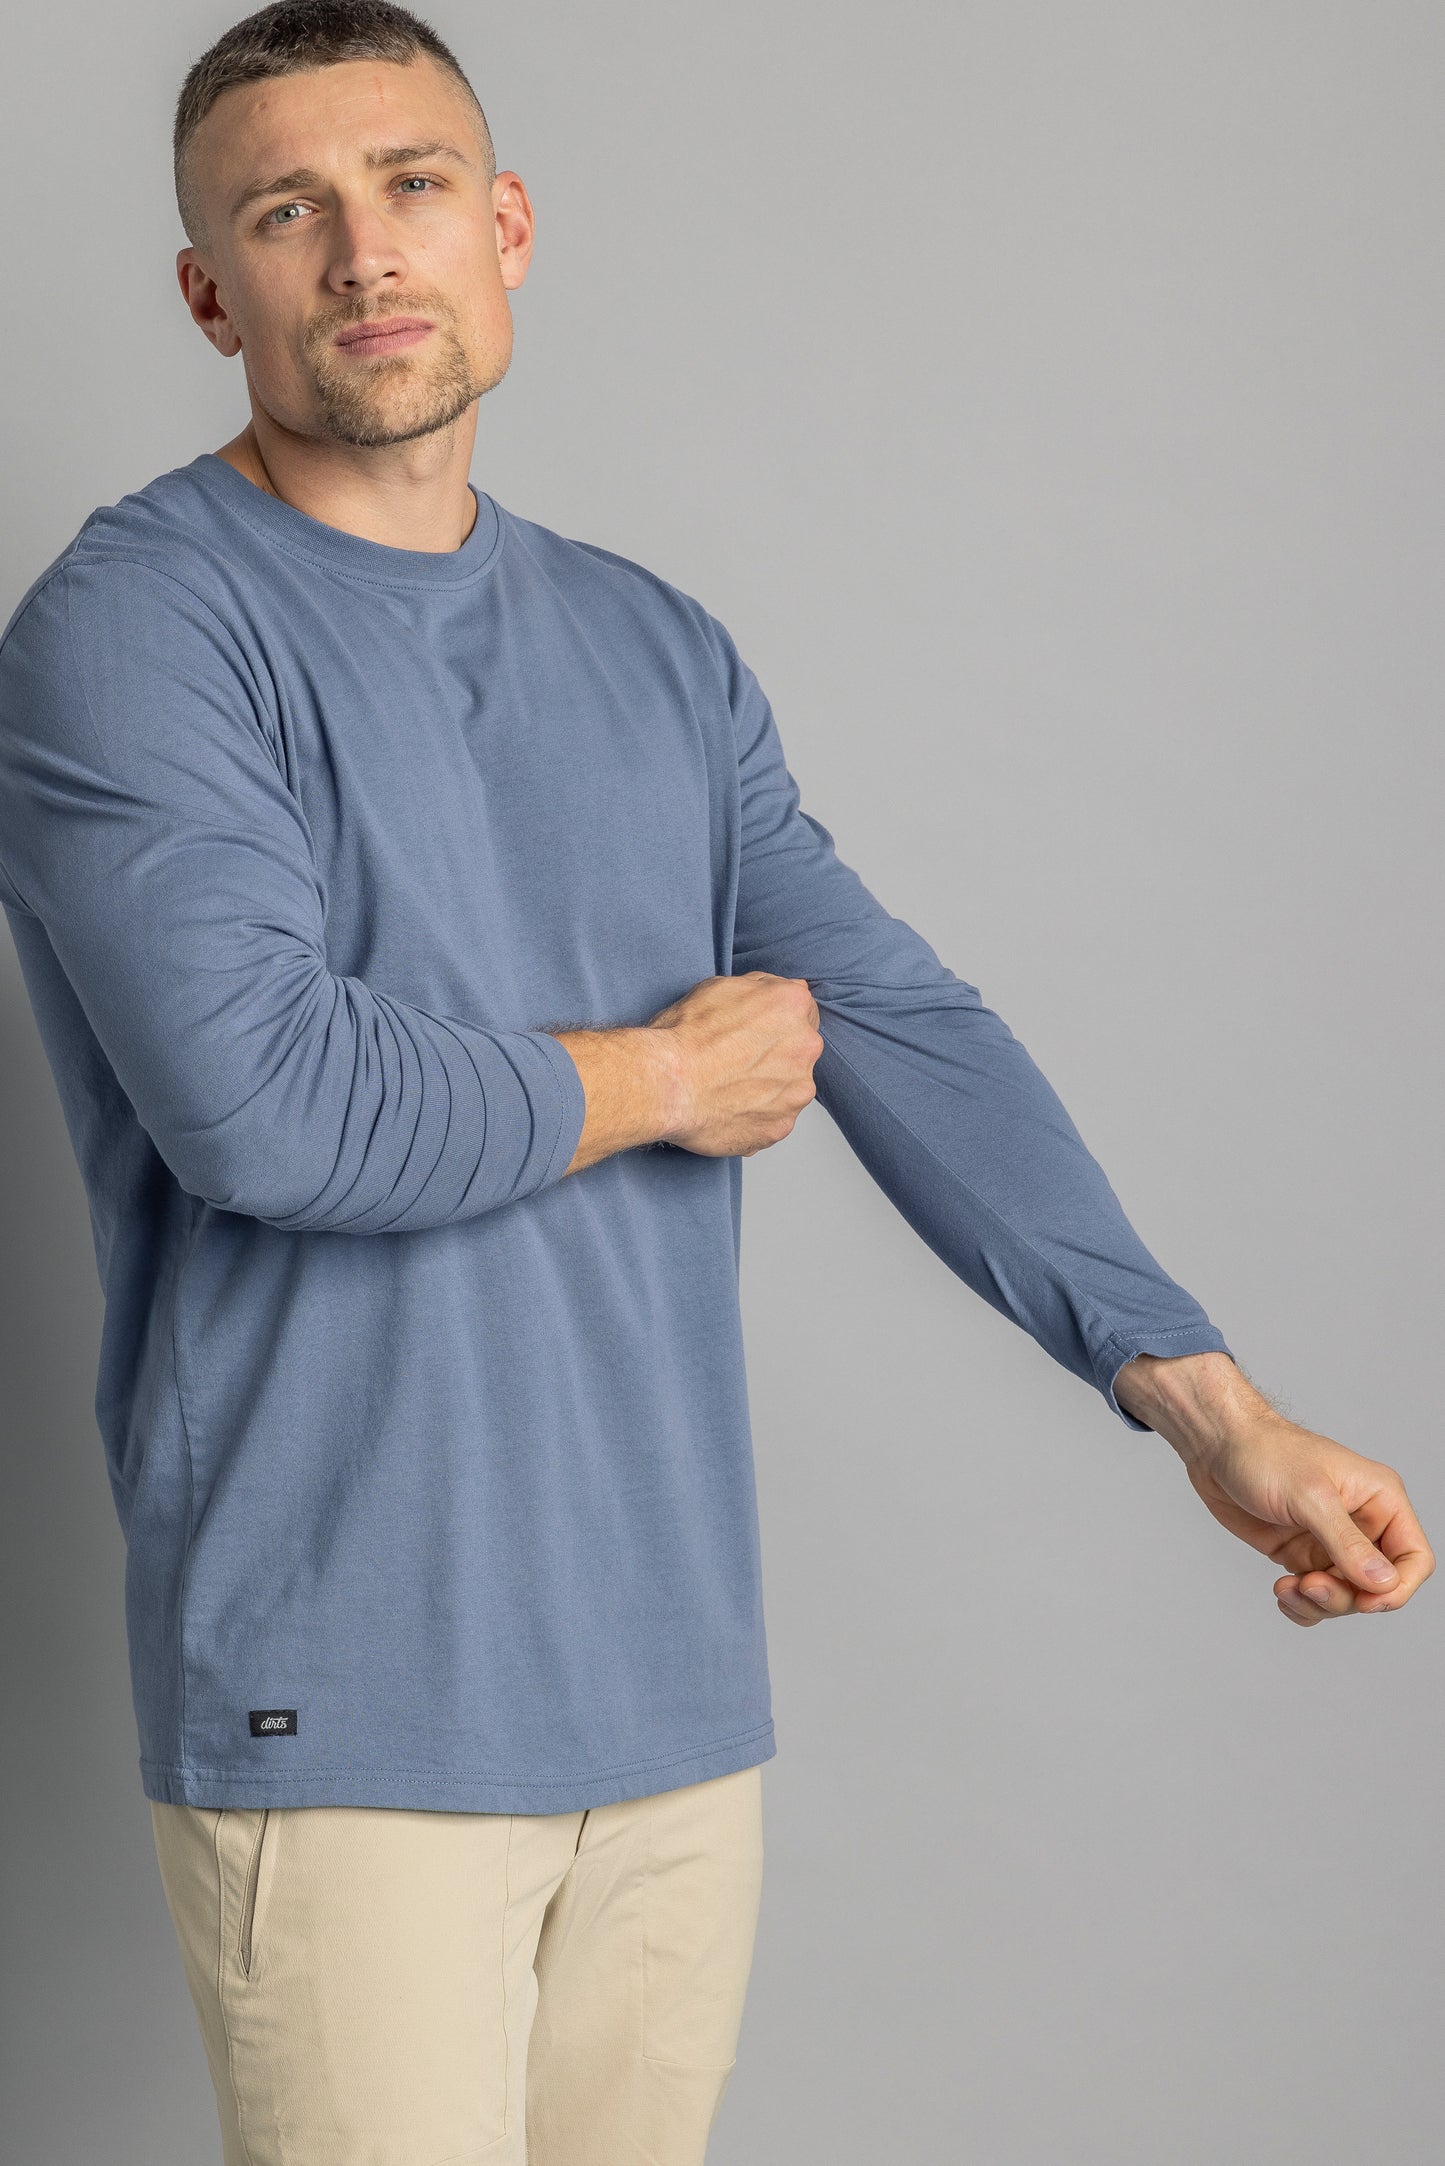 Recycled cotton longsleeve shirt, aquamarine